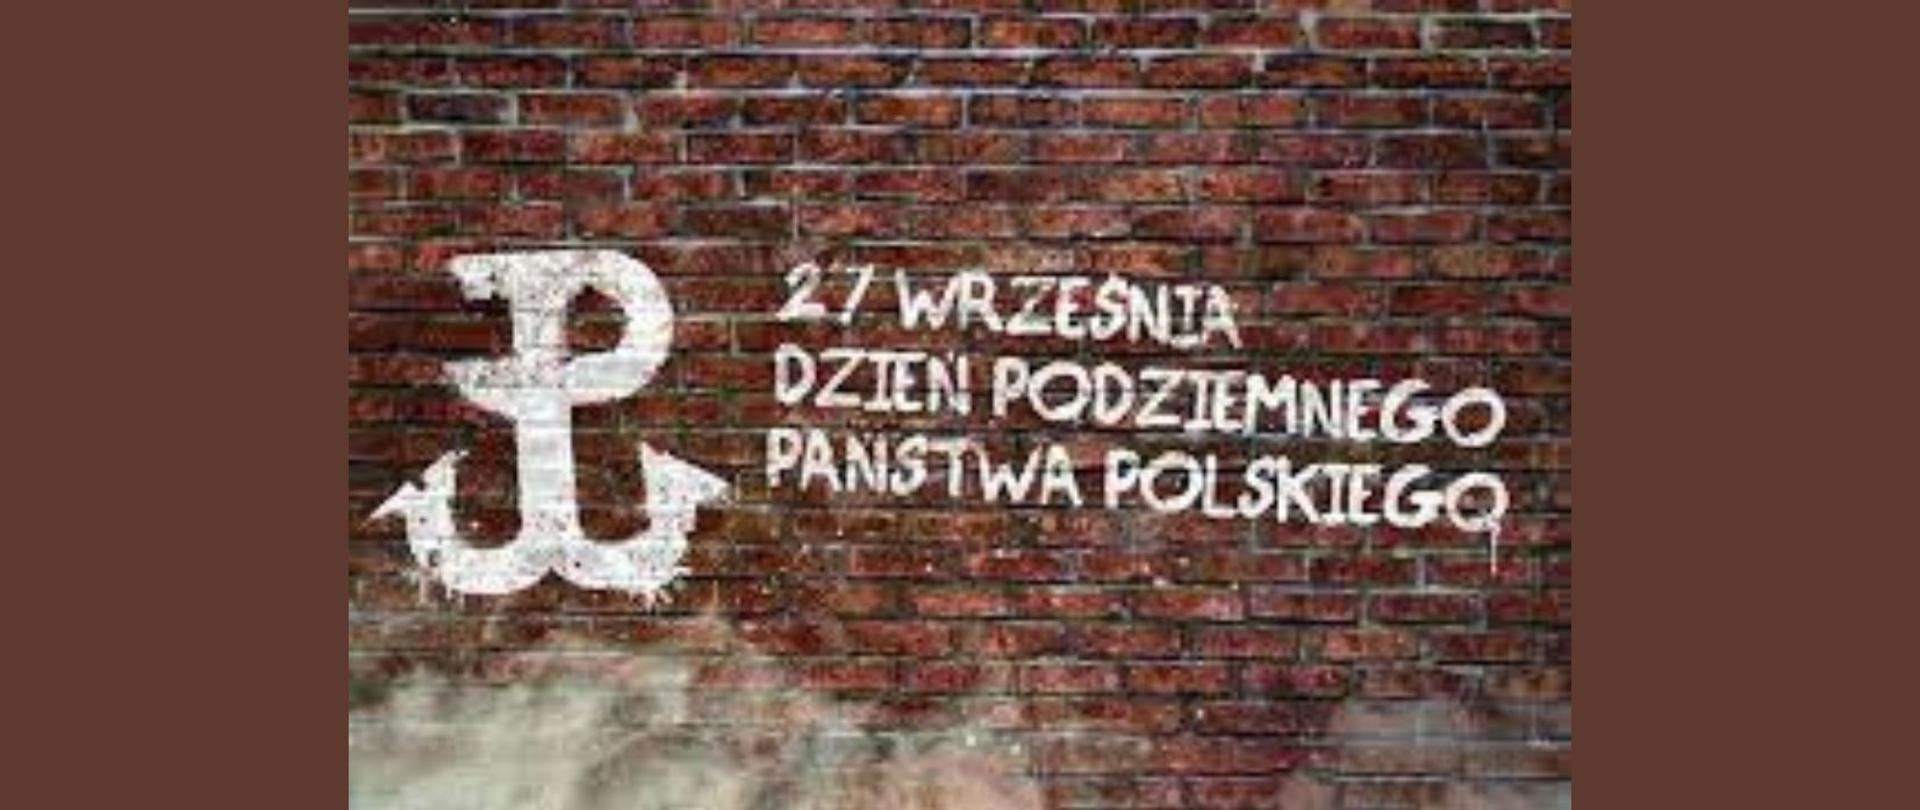 Biały napis - 27 września Dzień Podziemnego Państwa Polskiego z grafiką Znaku Polski Walczącej na ceglanym murze